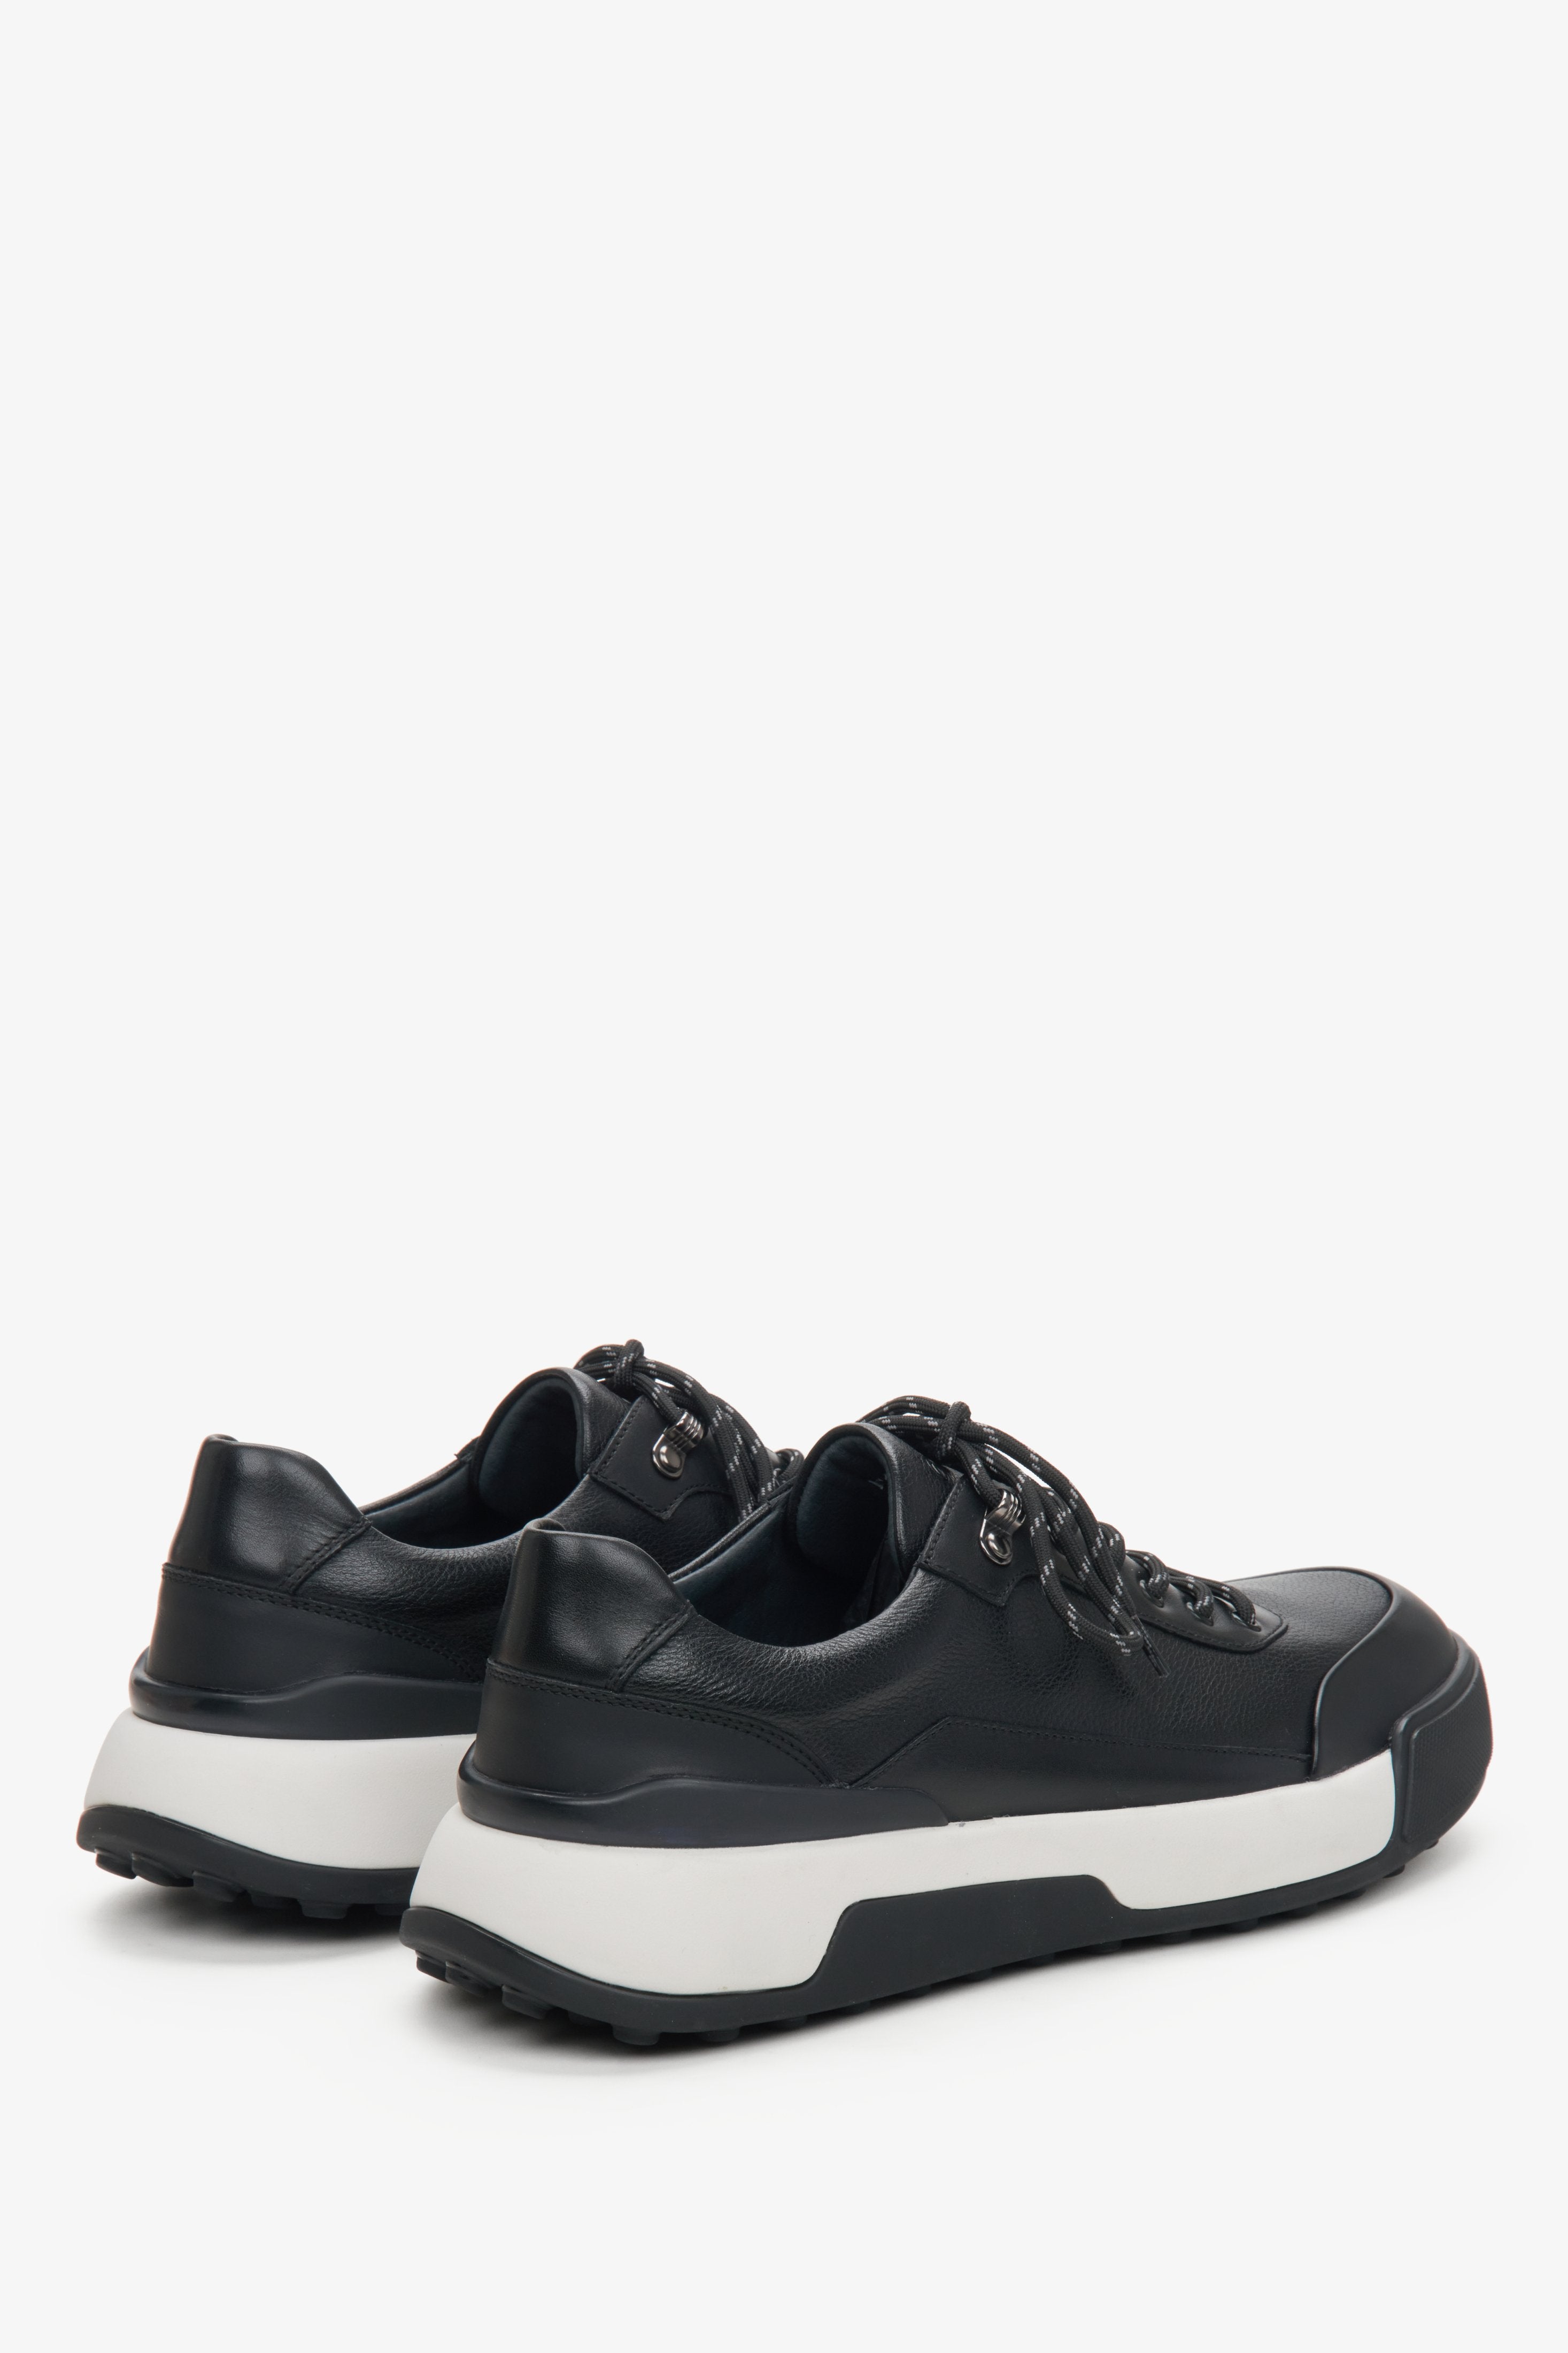 Skórzane czarne sneakersy męskie Estro - zbliżenie na tył i linię boczną butów.